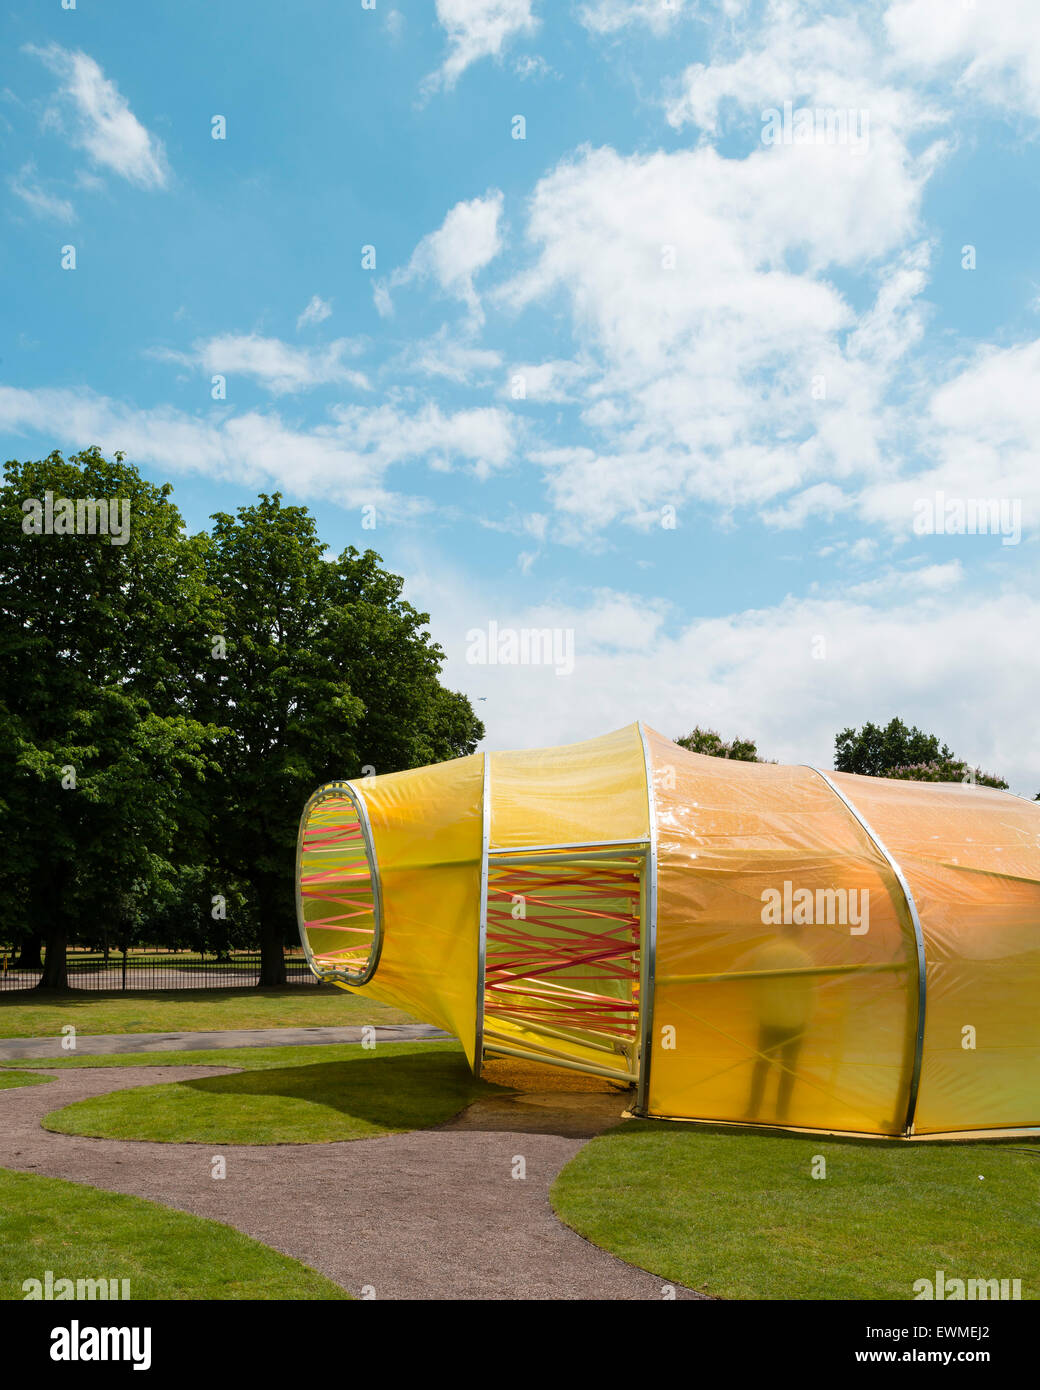 Blick von außen. Serpentin Sommer Pavillon 2015, London, Vereinigtes Königreich. Architekt: Selgascano Architekten, 2015. Stockfoto